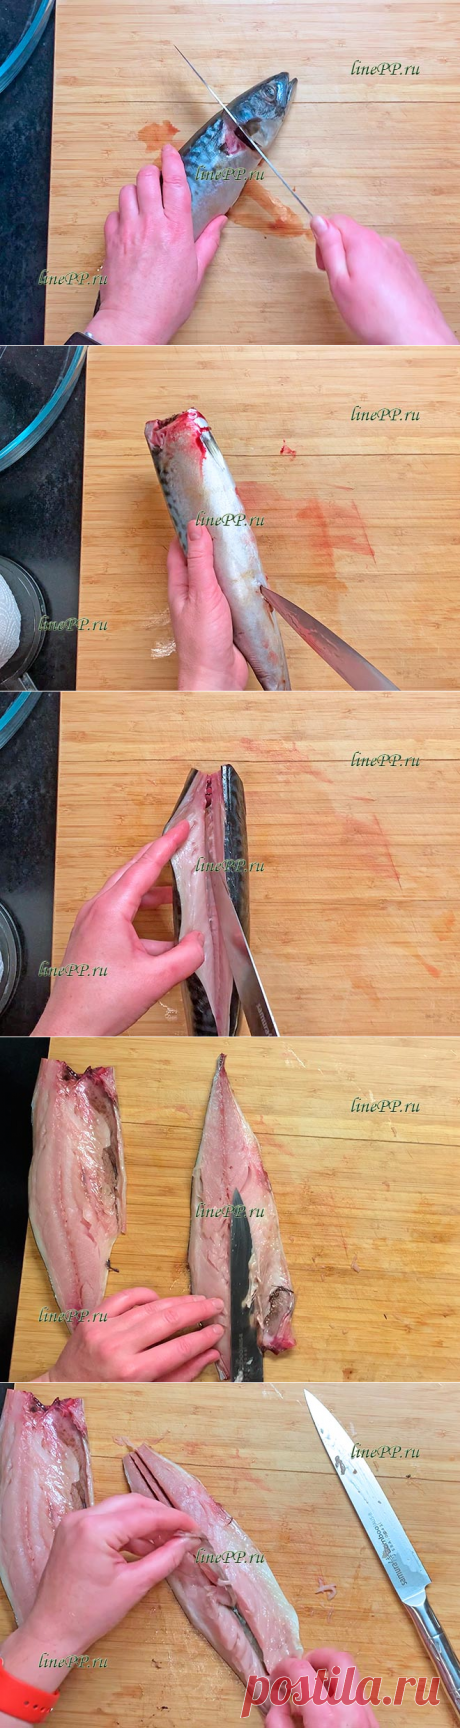 Диетическая скумбрия запечённая в духовке – как приготовить, как разделать на филе от костей